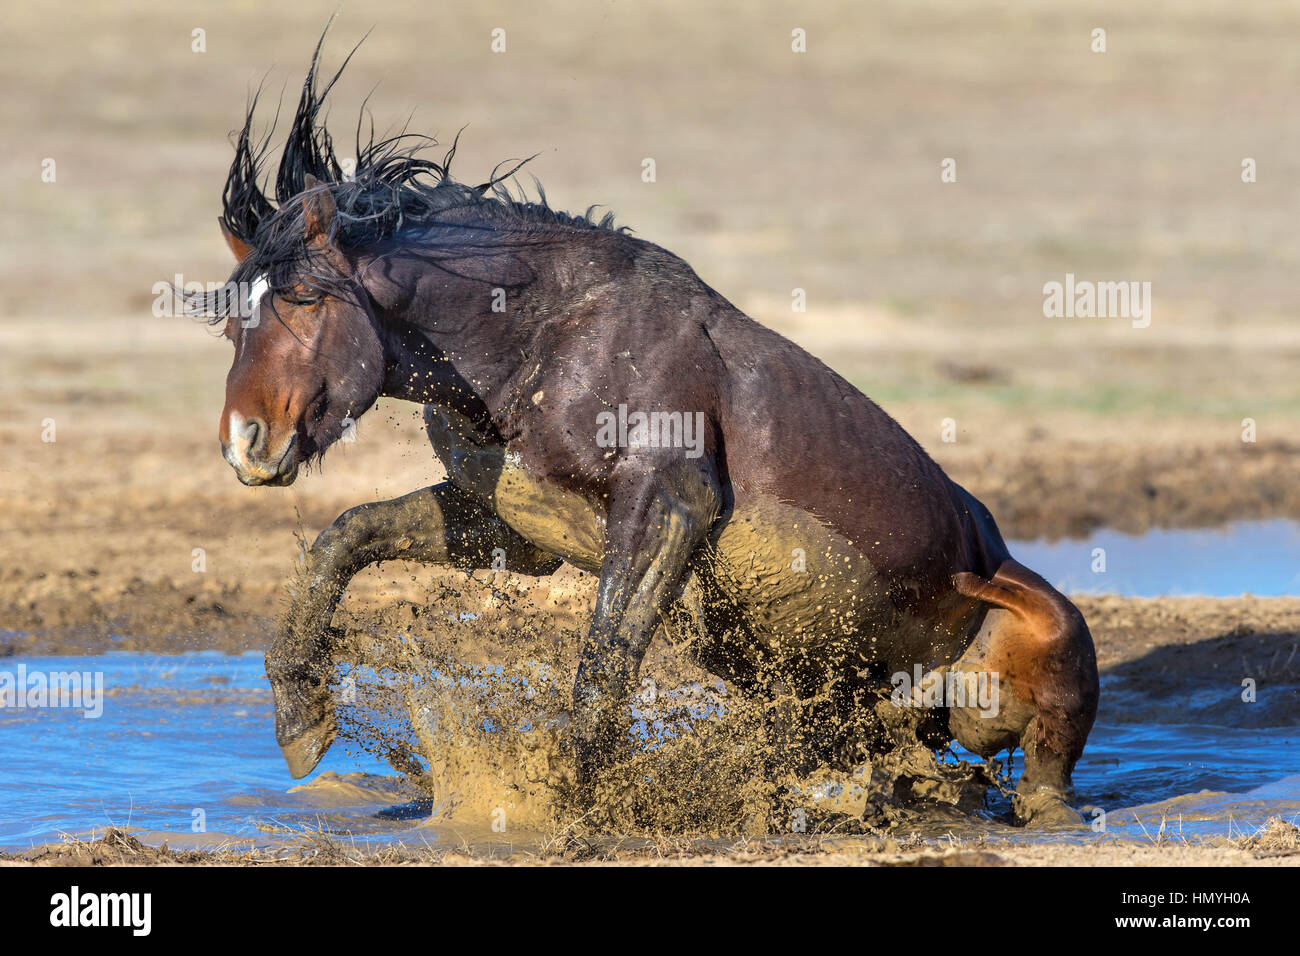 Stock Photo : Mustang sauvage de jouer dans la boue (Equus ferus caballus), Désert de l'Ouest, Utah, USA, Amérique du Nord Banque D'Images